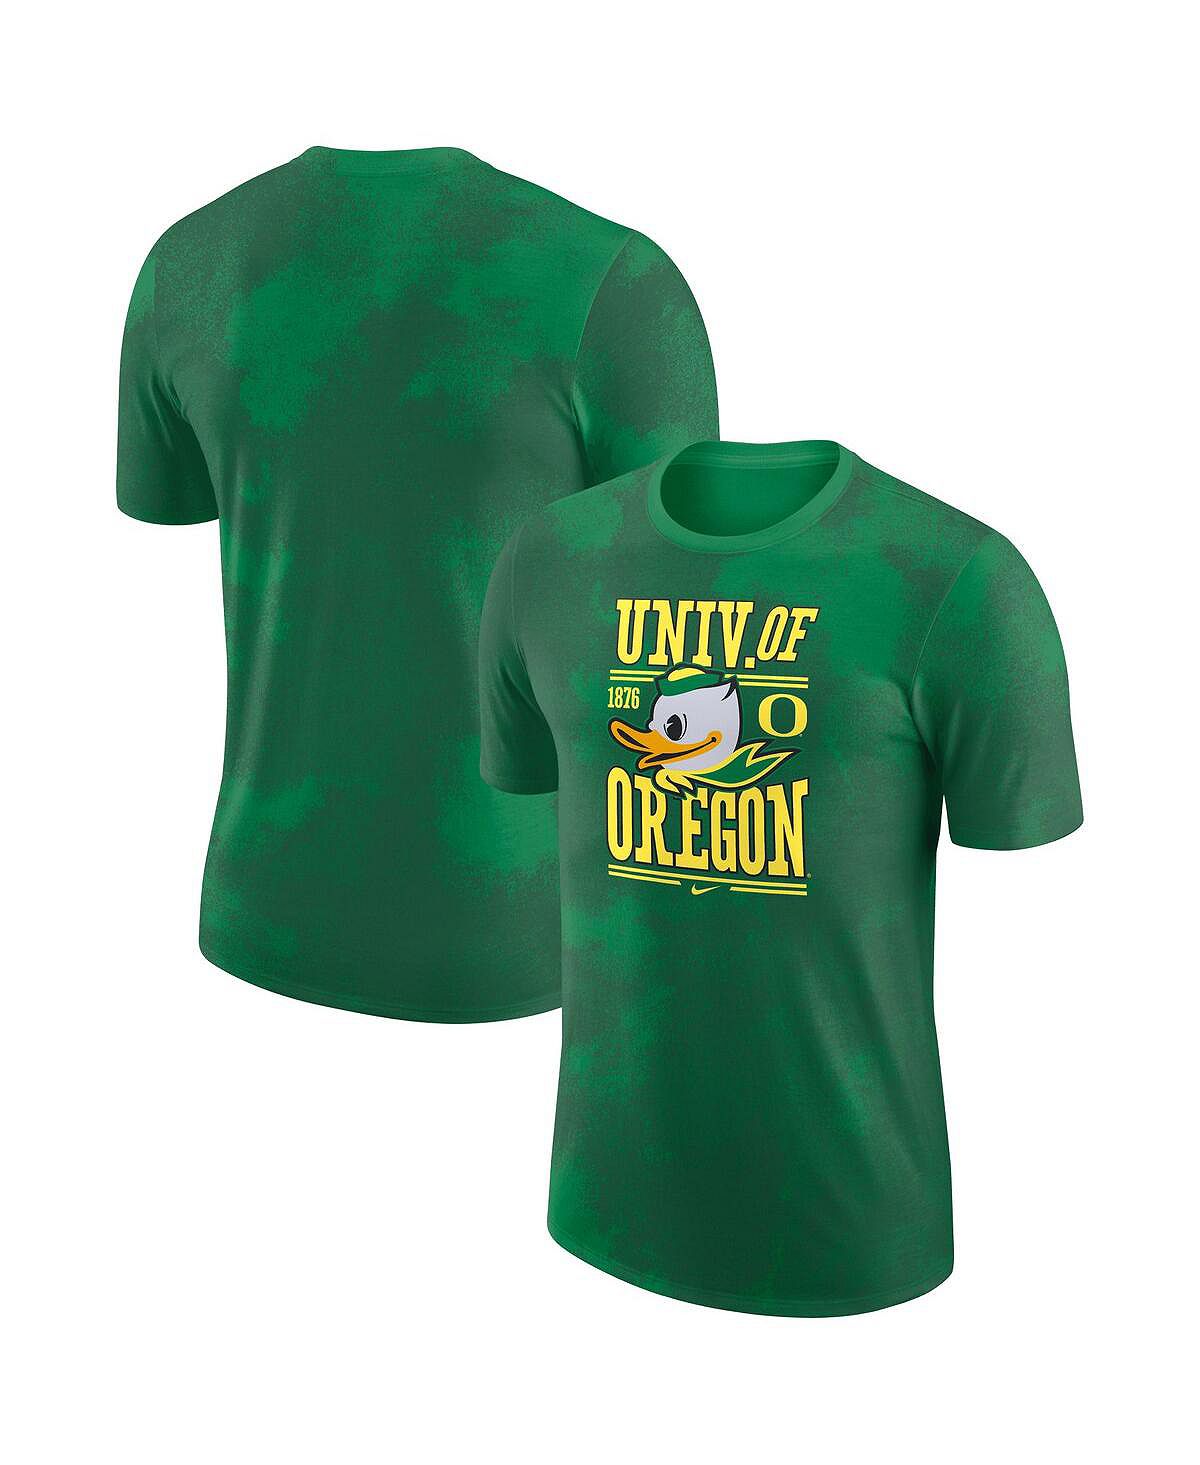 Мужская зеленая футболка oregon ducks team stack Nike, зеленый